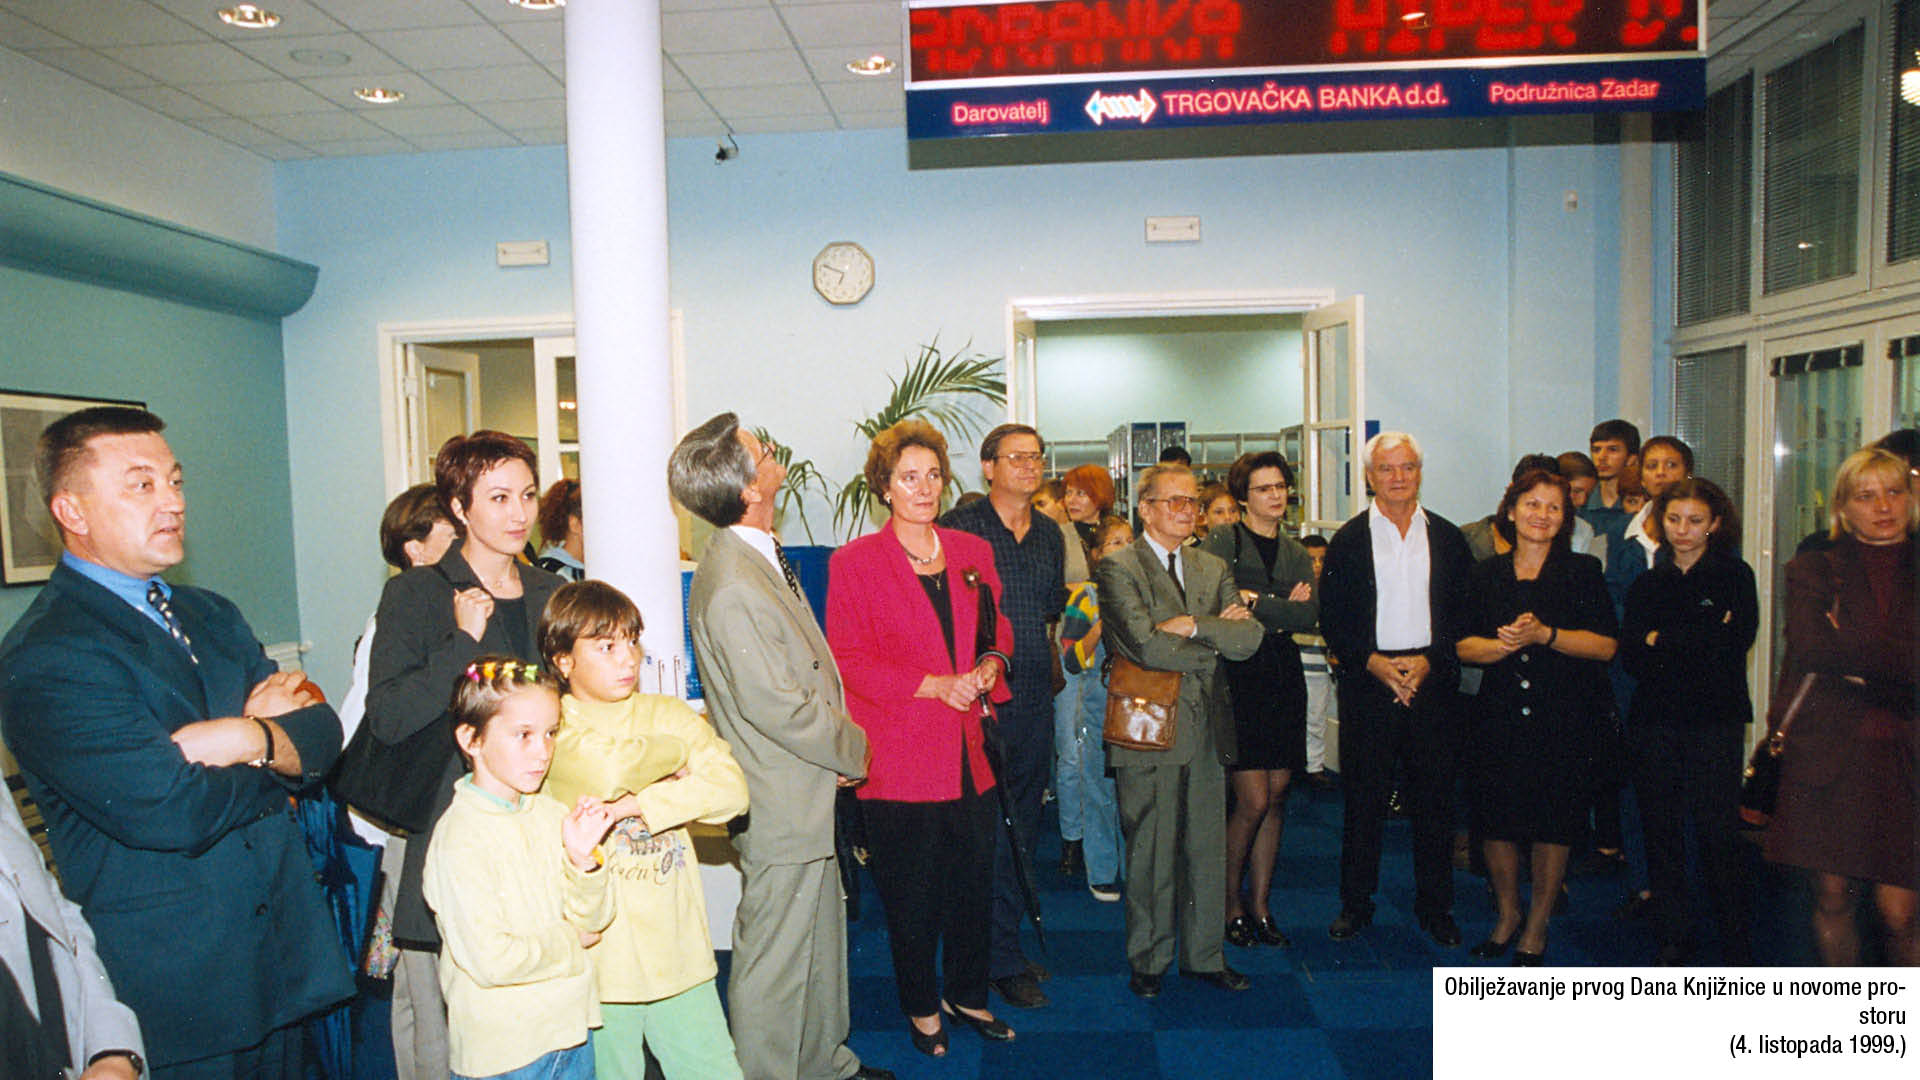 Obilježavanje prvog Dana Knjižnice u novome prostoru (4. listopada 1999.)